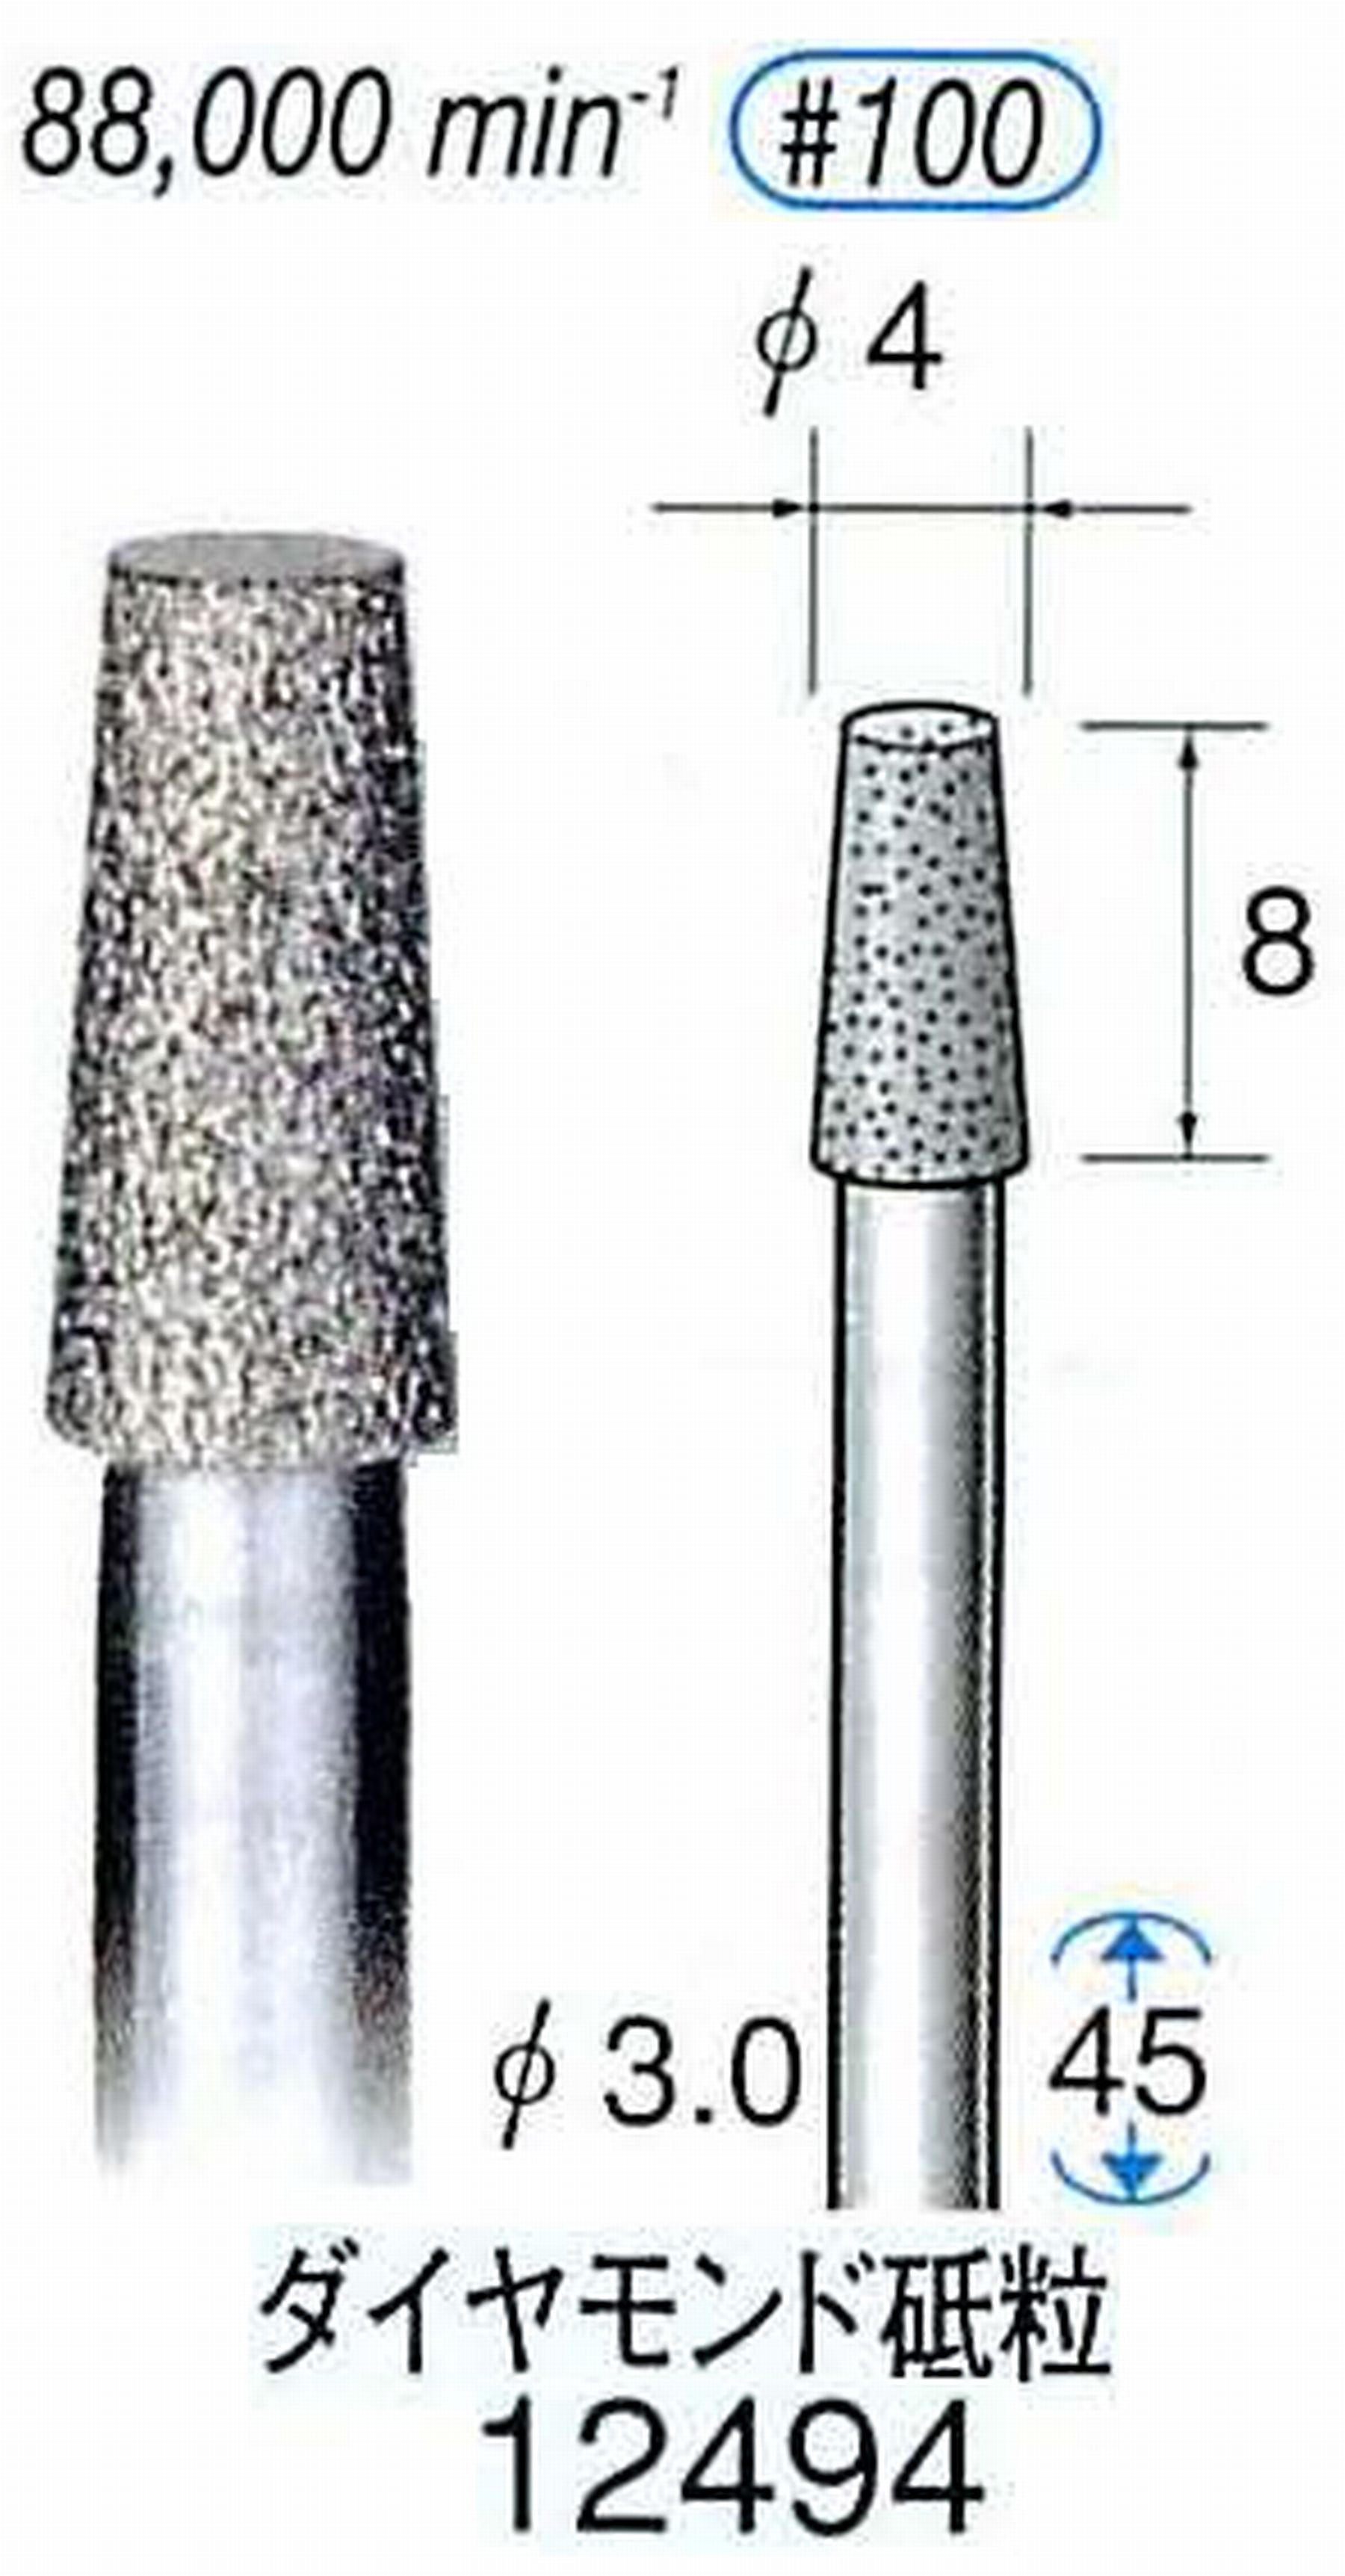 ナカニシ/NAKANISHI 電着ダイヤモンド ダイヤモンド砥粒 軸径(シャンク)φ3.0mm 12494